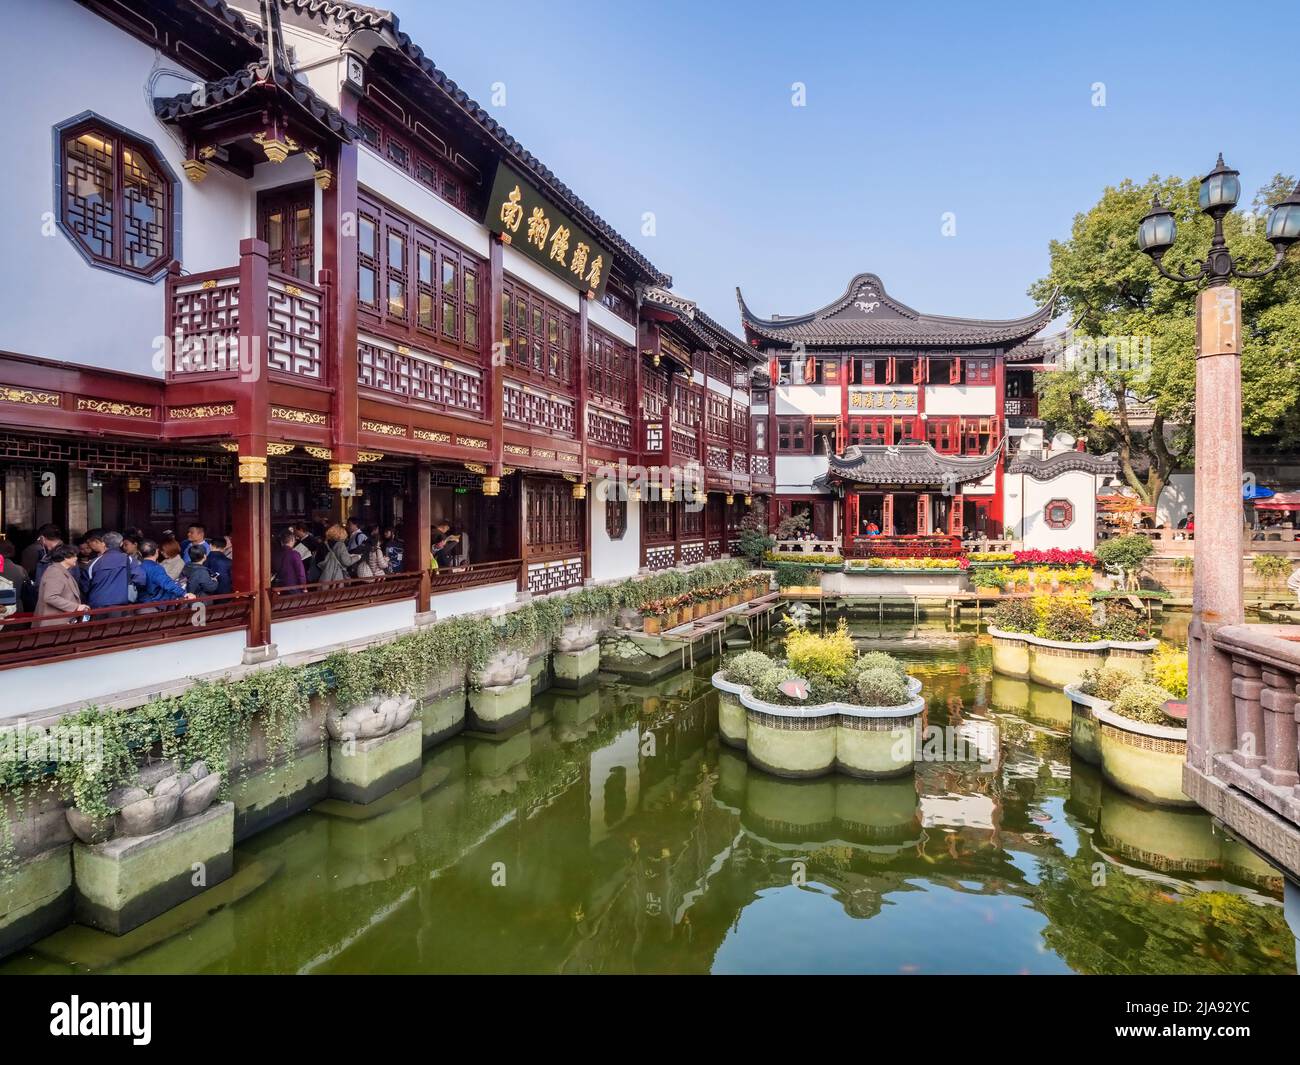 29 novembre 2018: Shanghai, Cina - Lago nella zona commerciale della Città Vecchia, una delle principali attrazioni turistiche. Foto Stock